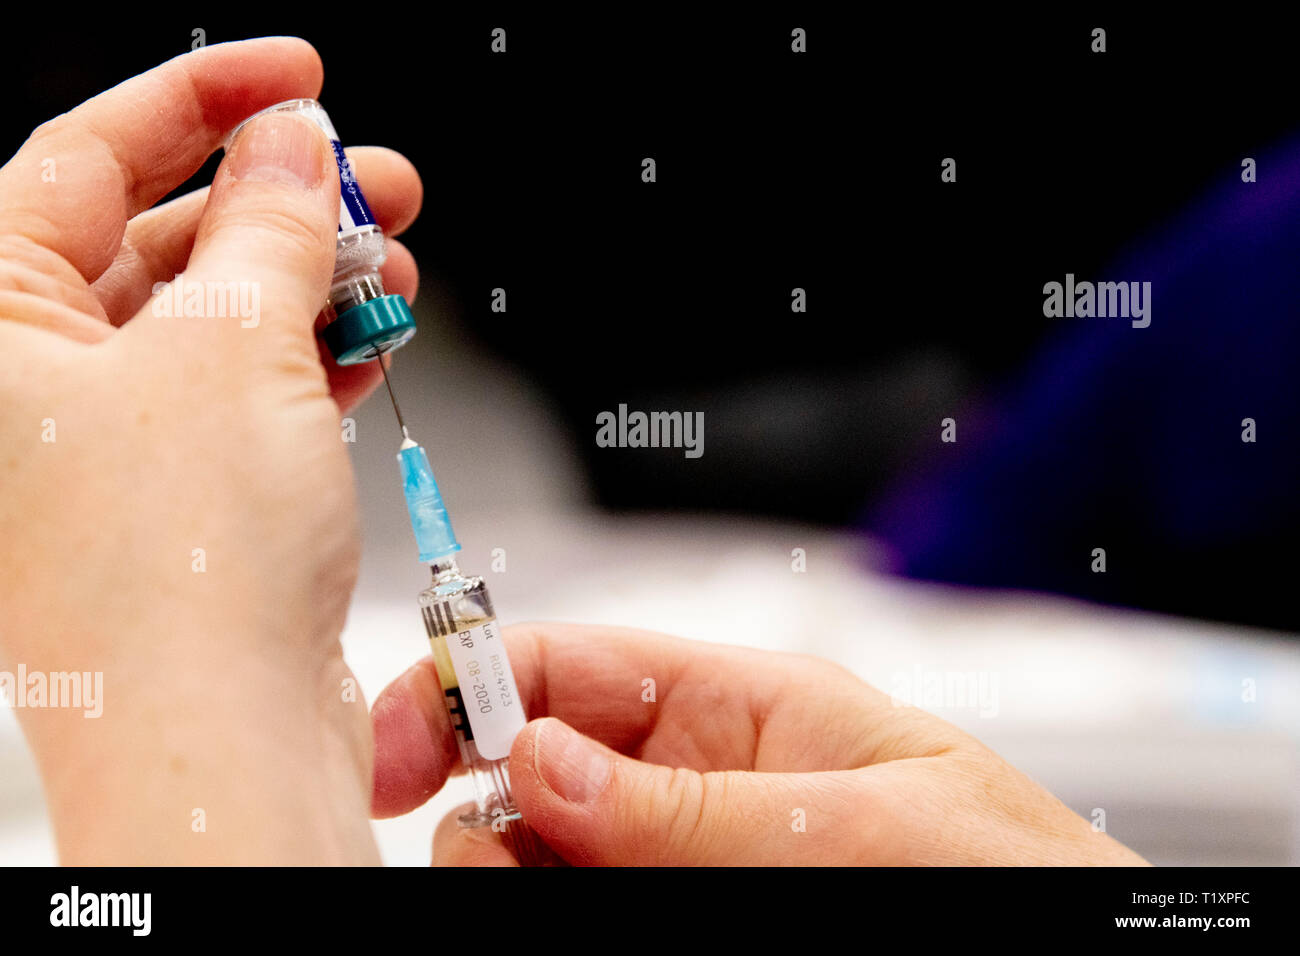 ROTTERDAM - Kinderen worden gevaccineerd tijdens een vaccinatiedag in Ahoy. Staatssecretaris Paul Blokhuis (Volksgezondheid) wil met een vaccinatie-al Stock Photo